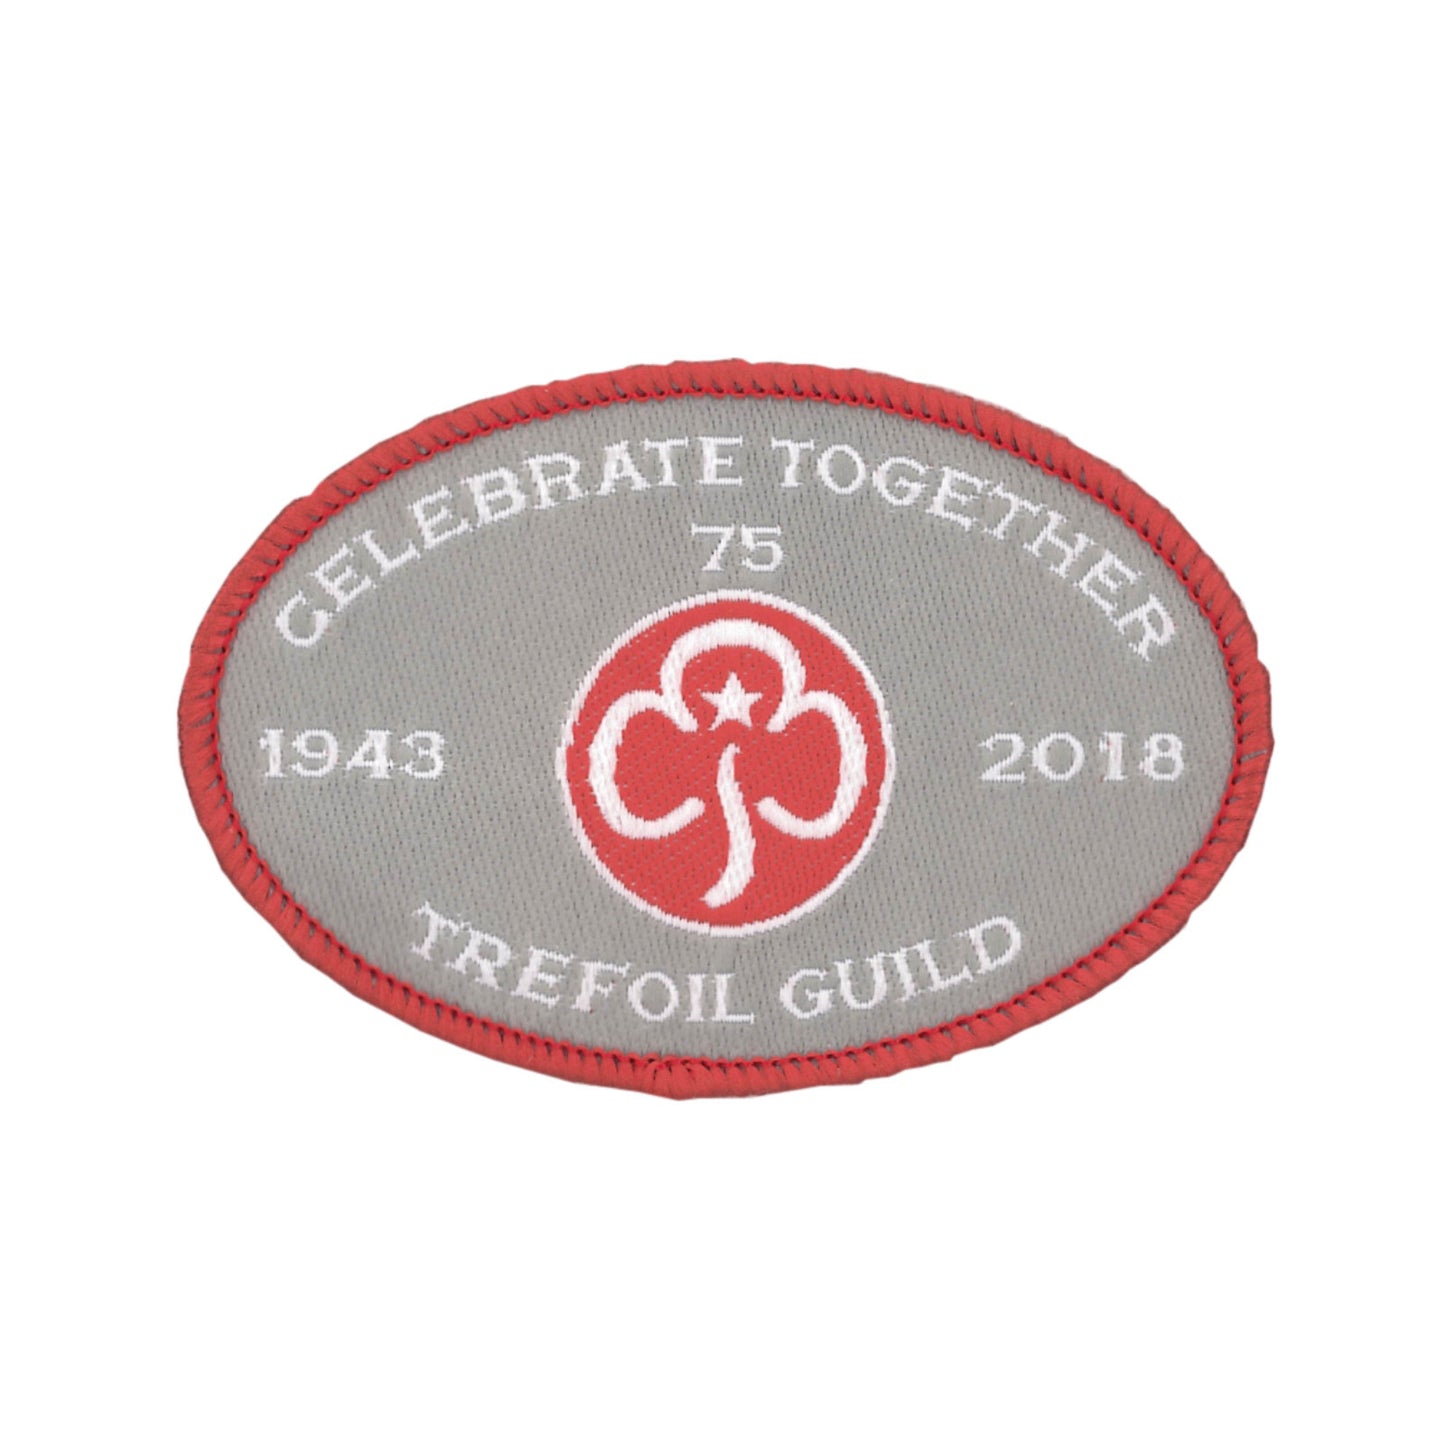 Trefoil Guild 75th woven badge